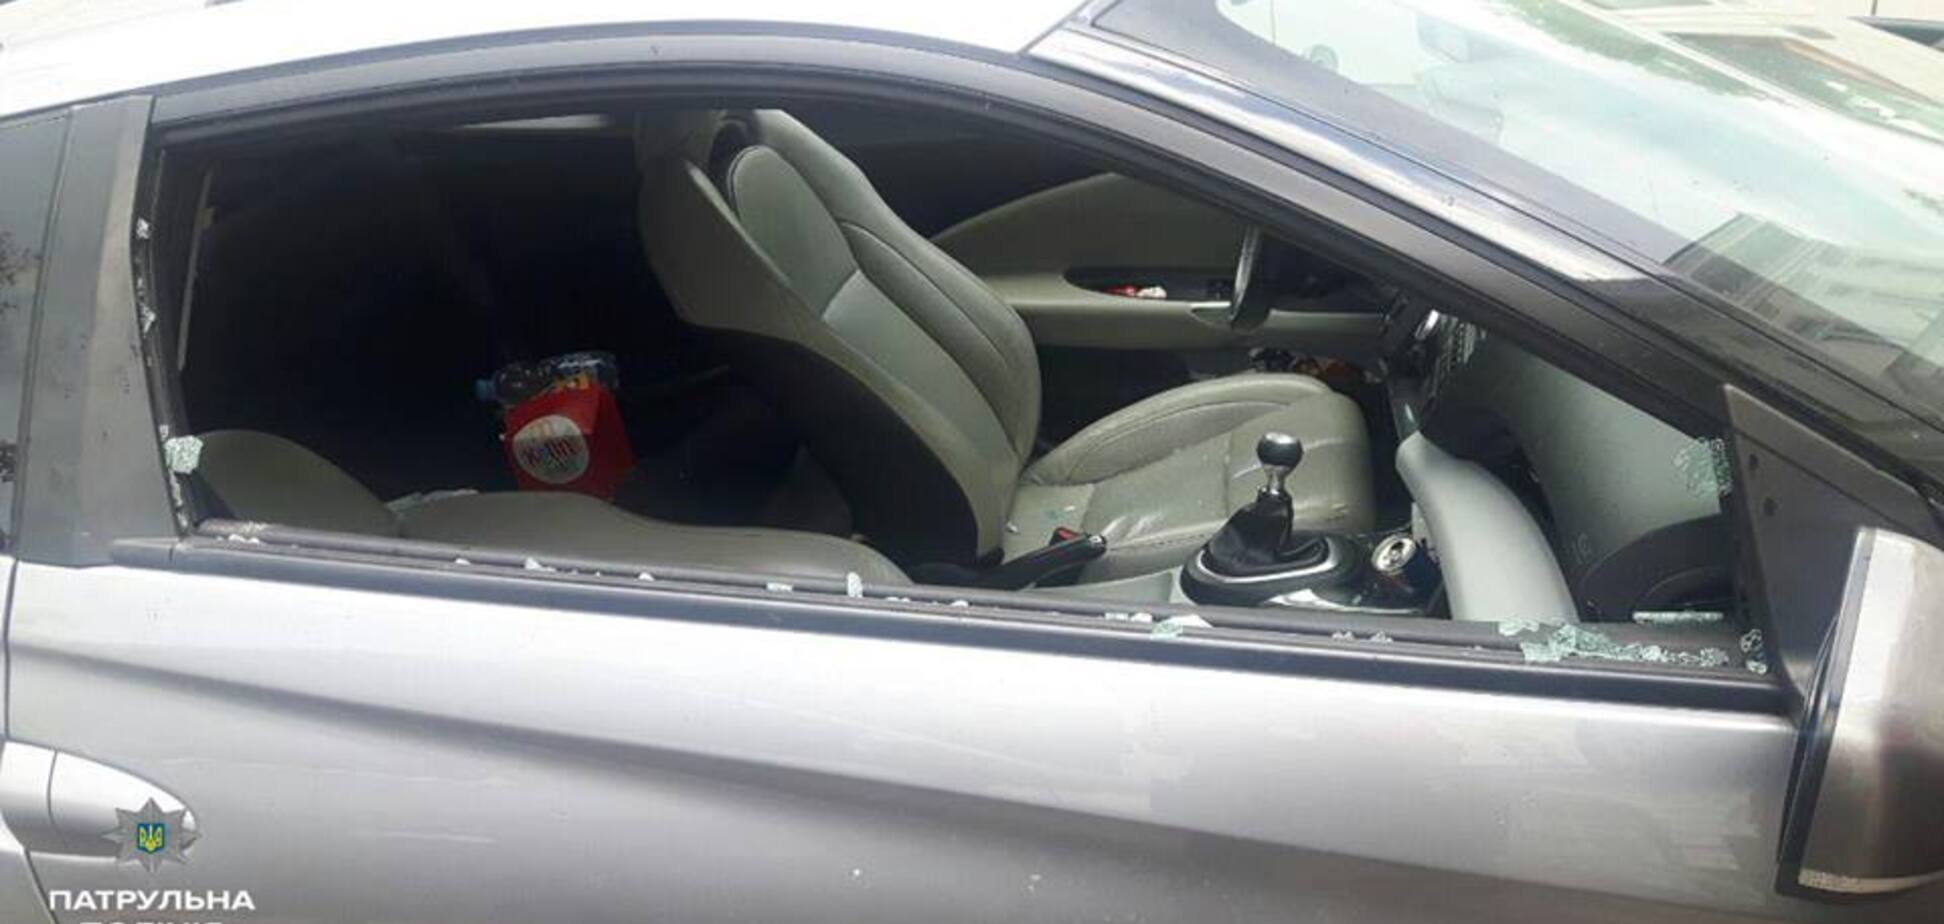 Полтавчанка закрыла 3-летнего ребенка в раскаленной машине и ушла: опубликованы фото 